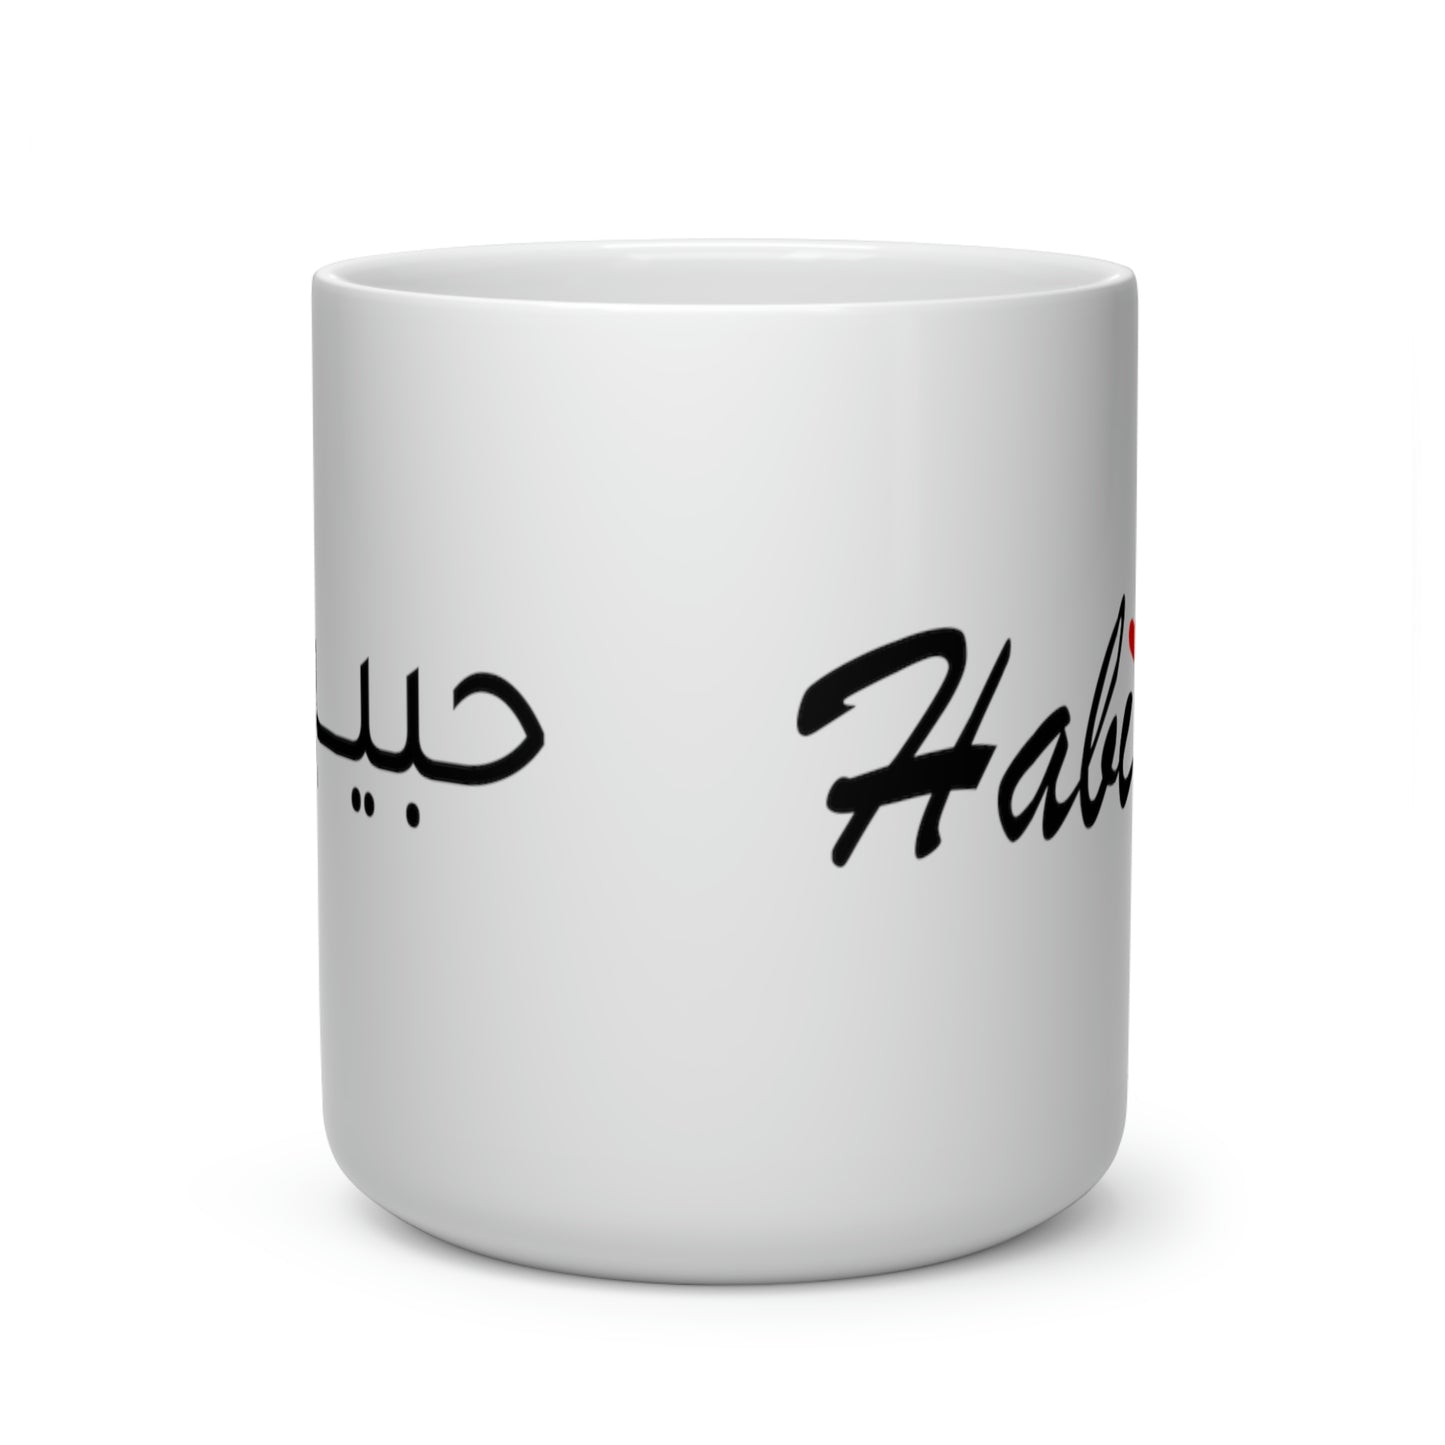 Habibi - Heart Shape Mug